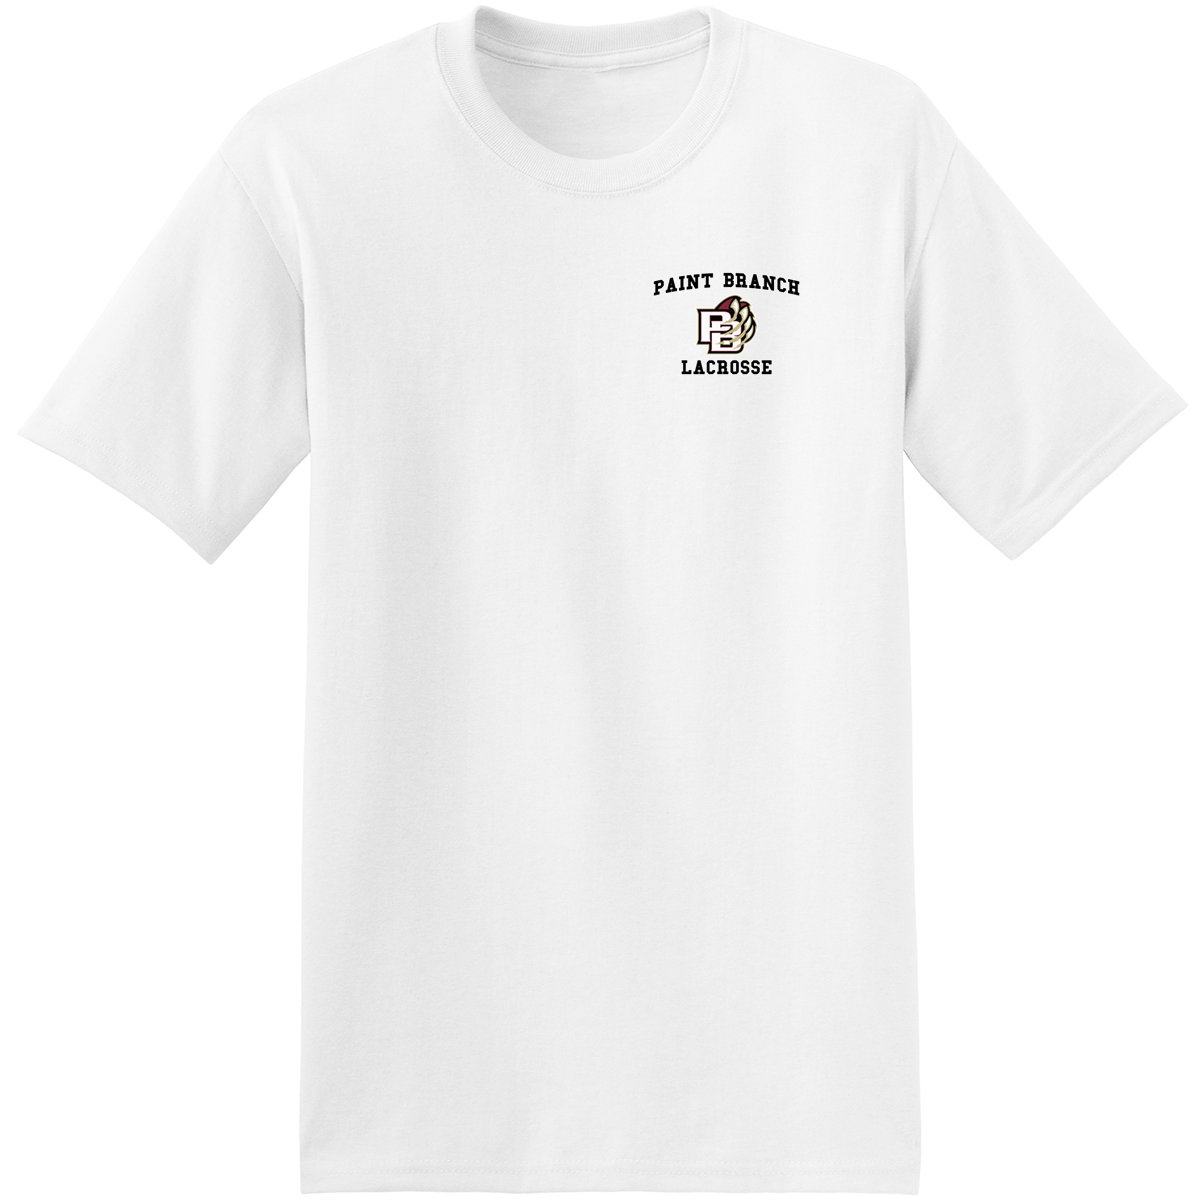 Paint Branch Lacrosse T-Shirt